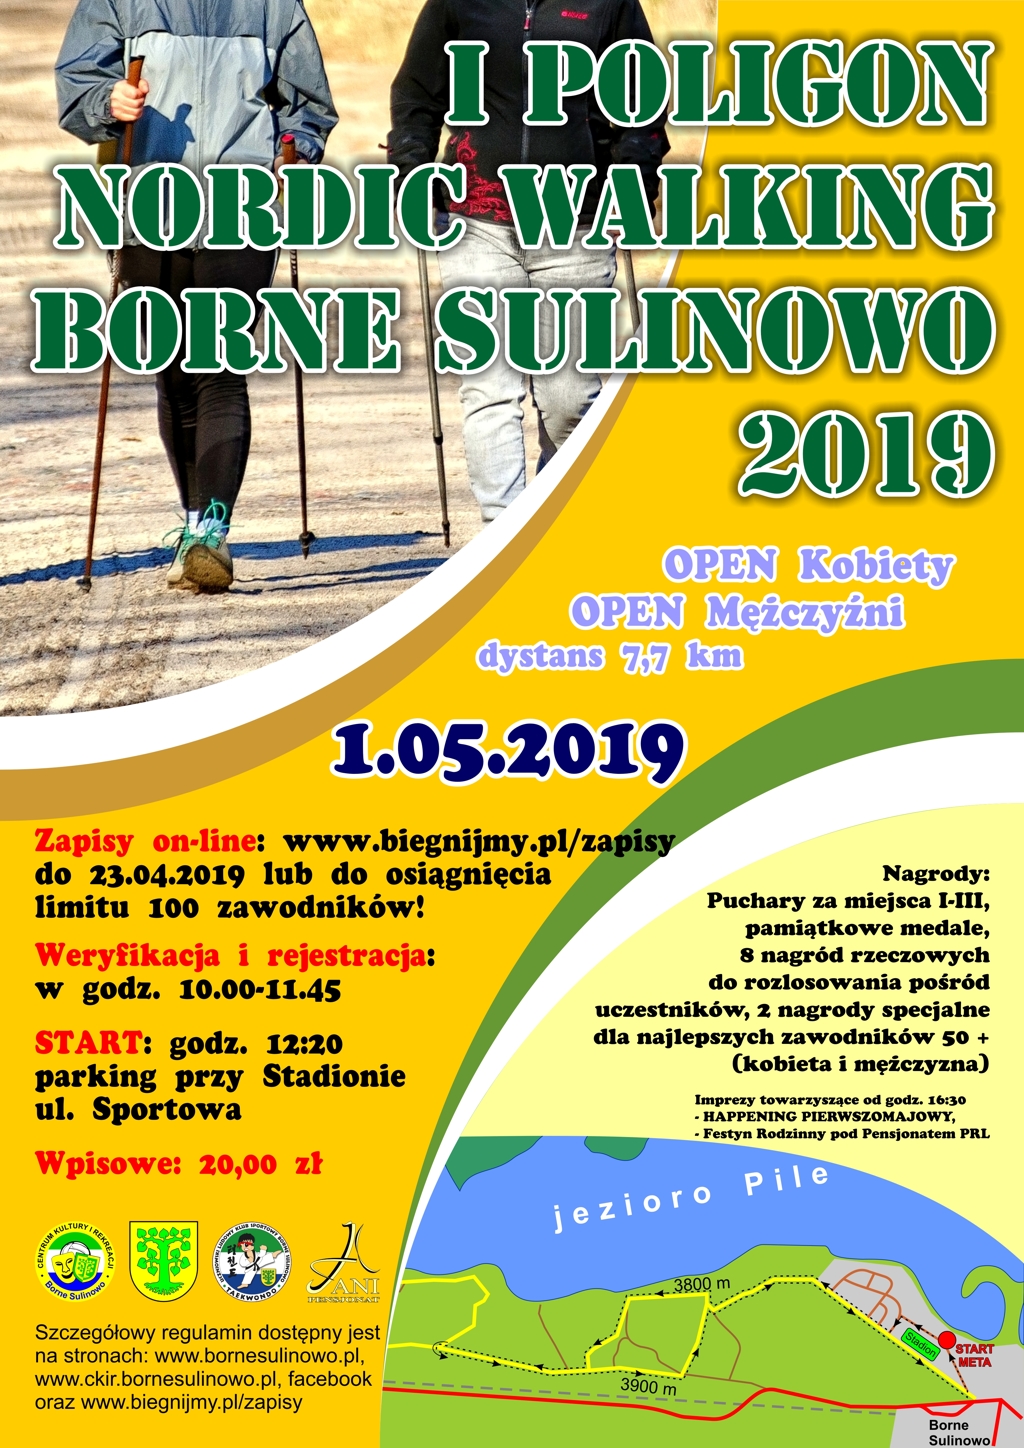 1 maja odbędzie się I POLIGON NORDIC WALKING – BORNE SULINOWO 2019